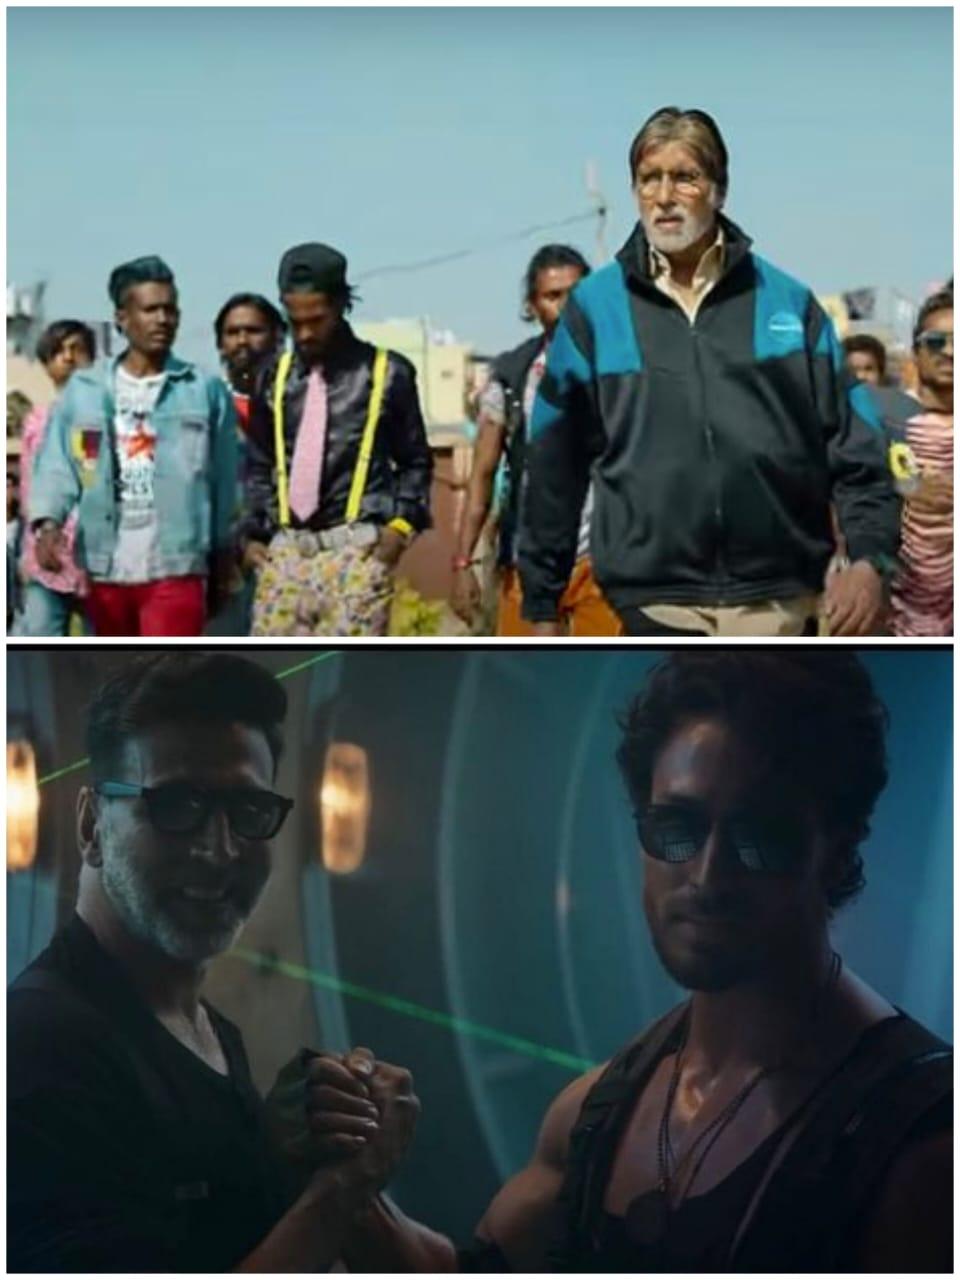 Teaser : Jhund फिल्म में जहां अपनी गैंग के साथ नजर आए अमिताभ बच्चन, तो Bade Miyan Chote Miyan अक्षय कुमार और टाइगर श्रॉफ करेंगे एक्शन का बड़ा धमाका